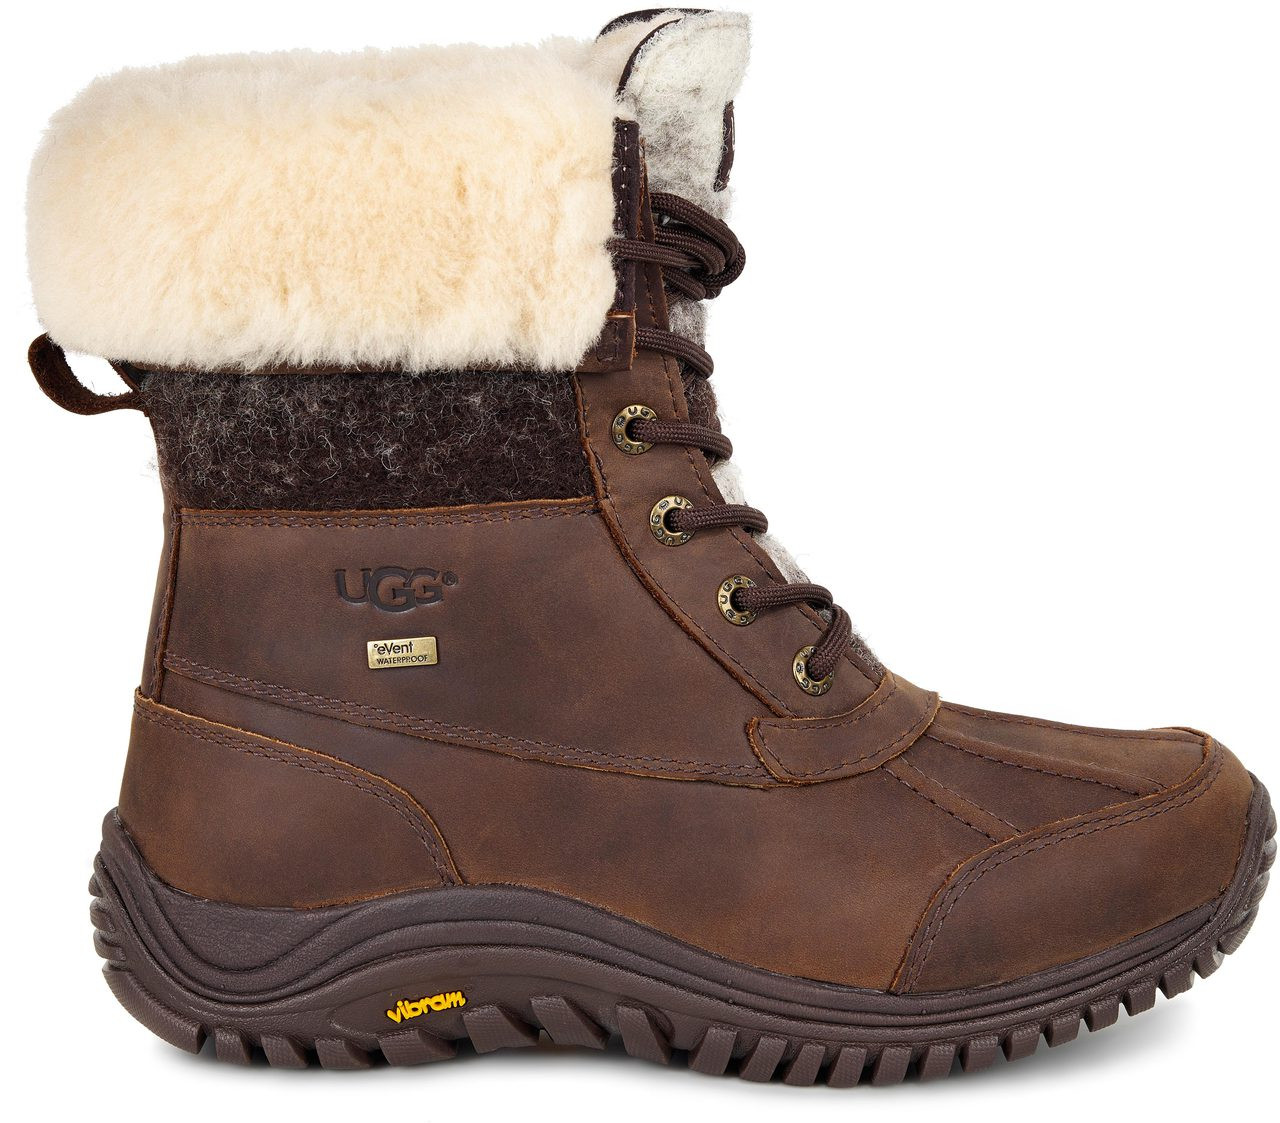 adirondack ii weatherproof leather boot